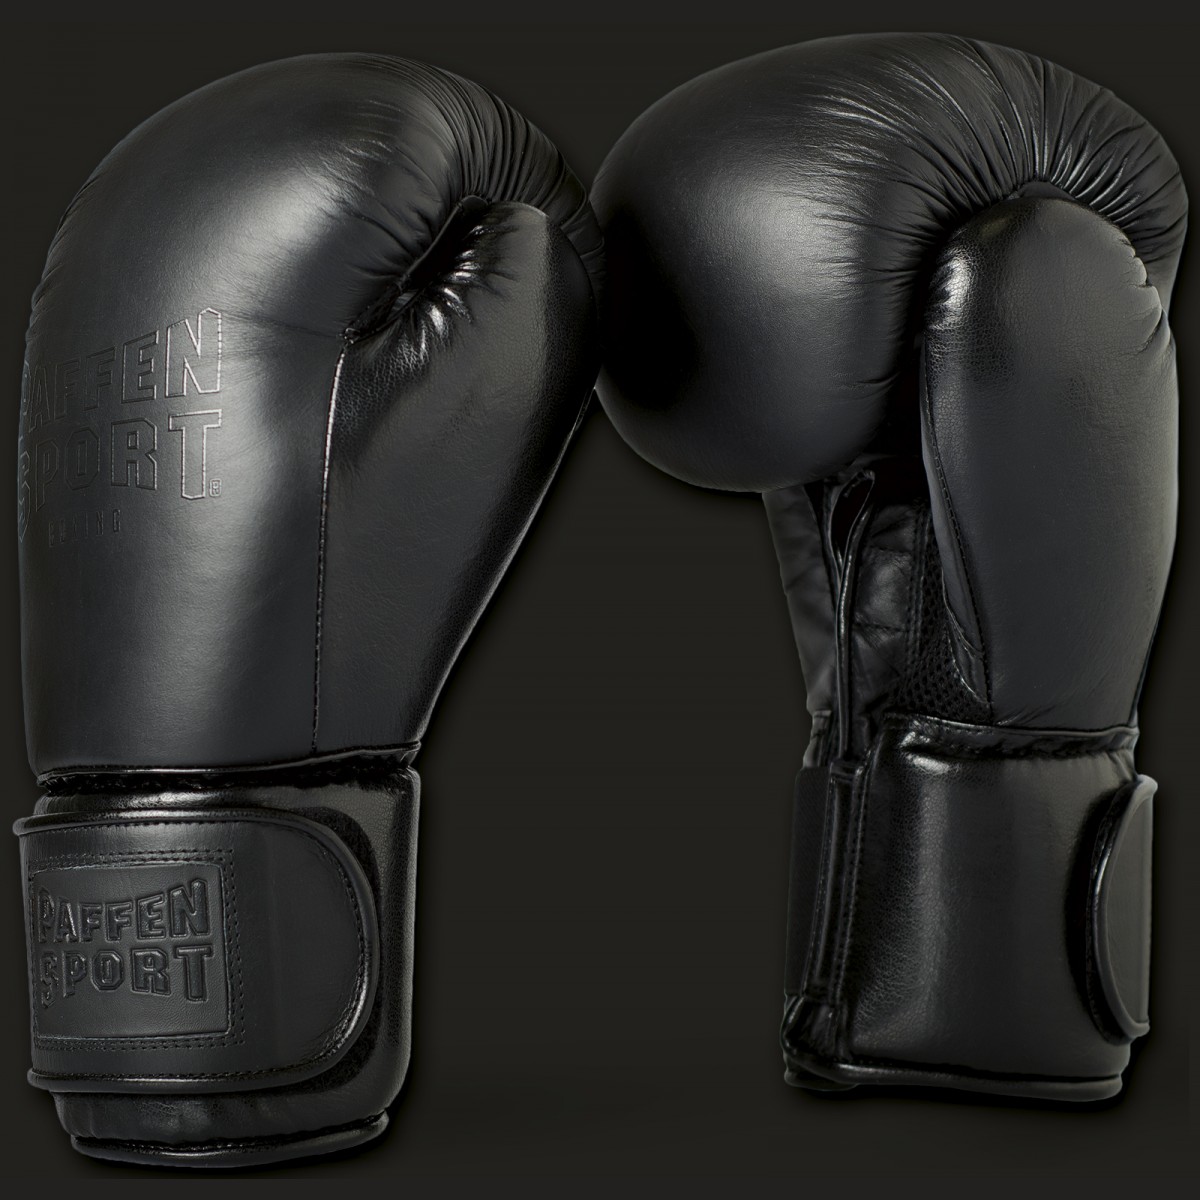 Paffen Sport Black Logo Boxhandschuhe für das Sparring |  K1-Kampfsportartikel